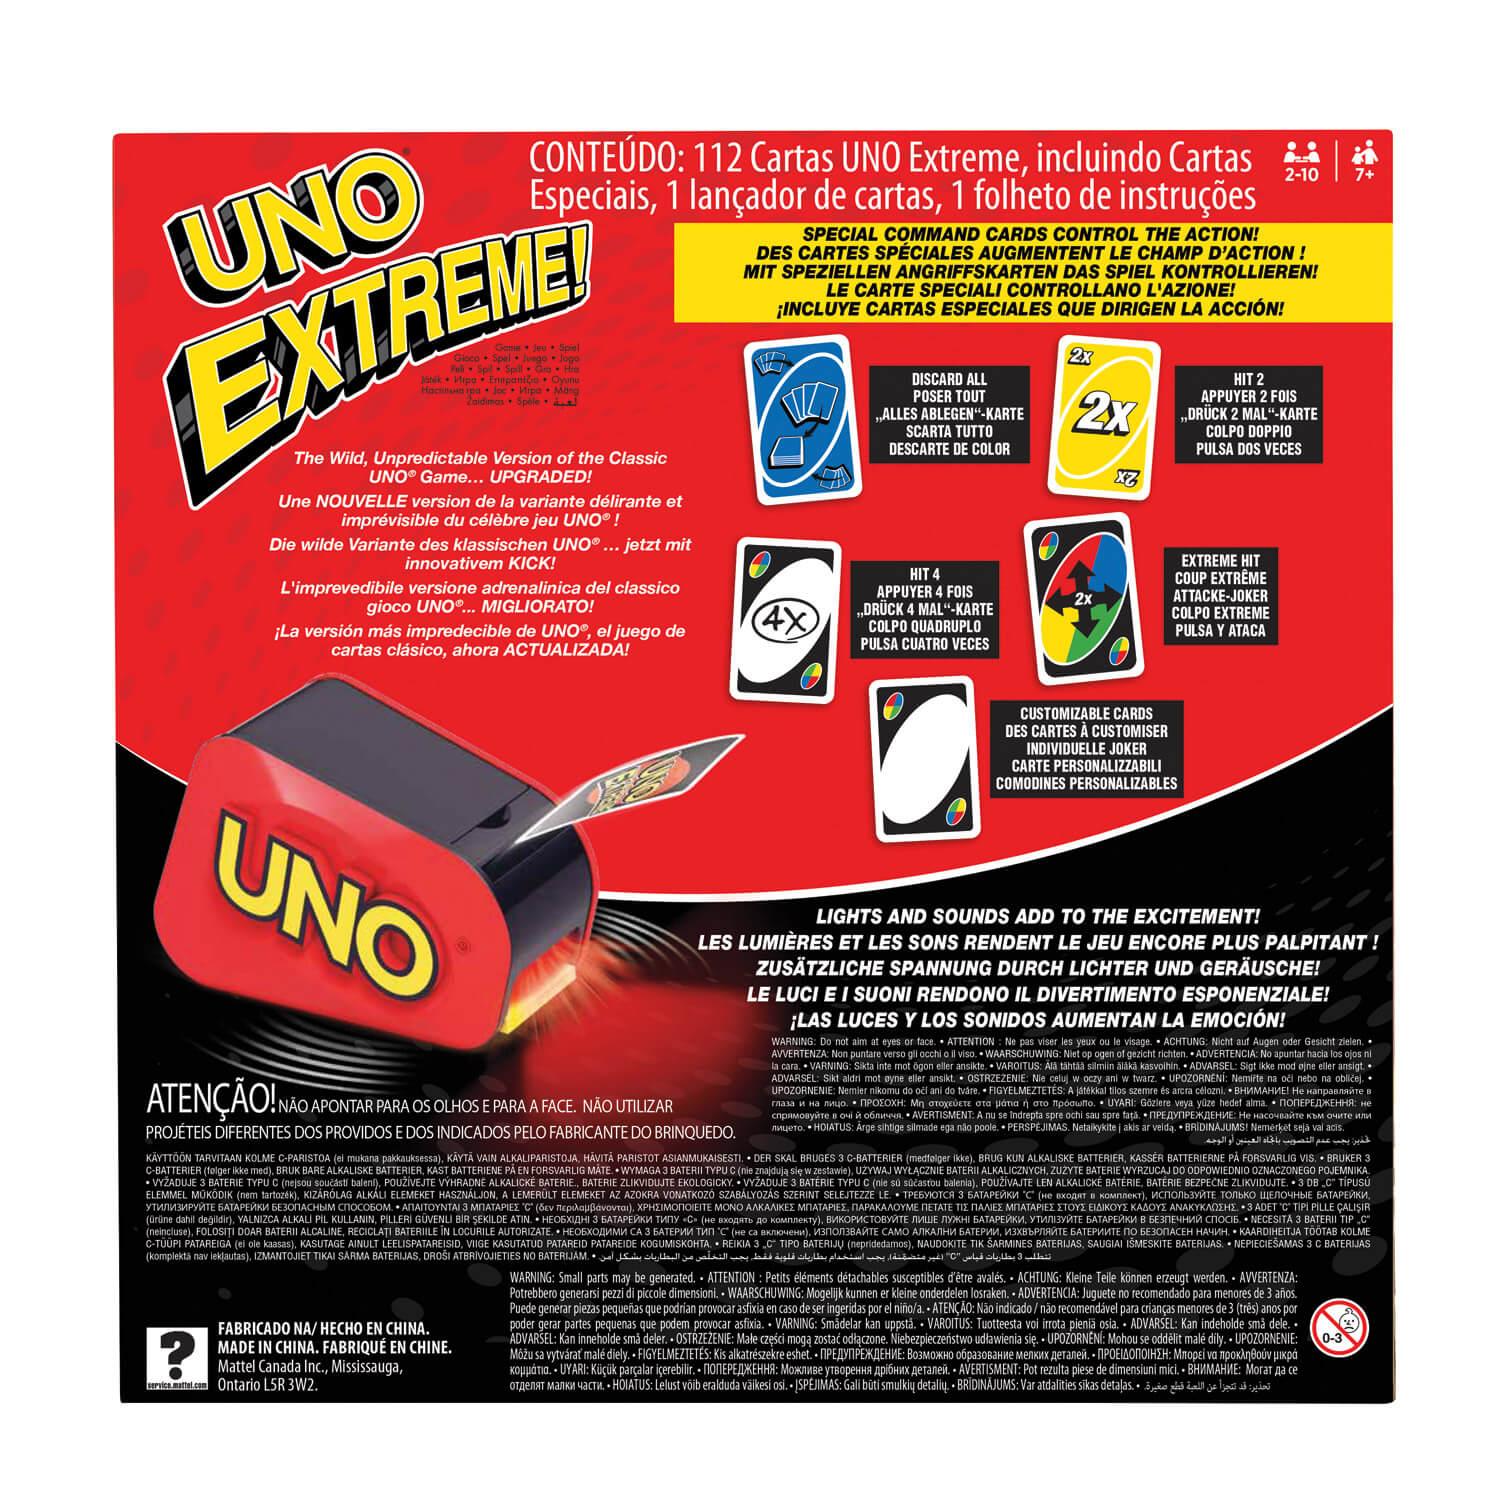 Uno Extreme - Jeux et jouets Mattel - Avenue des Jeux